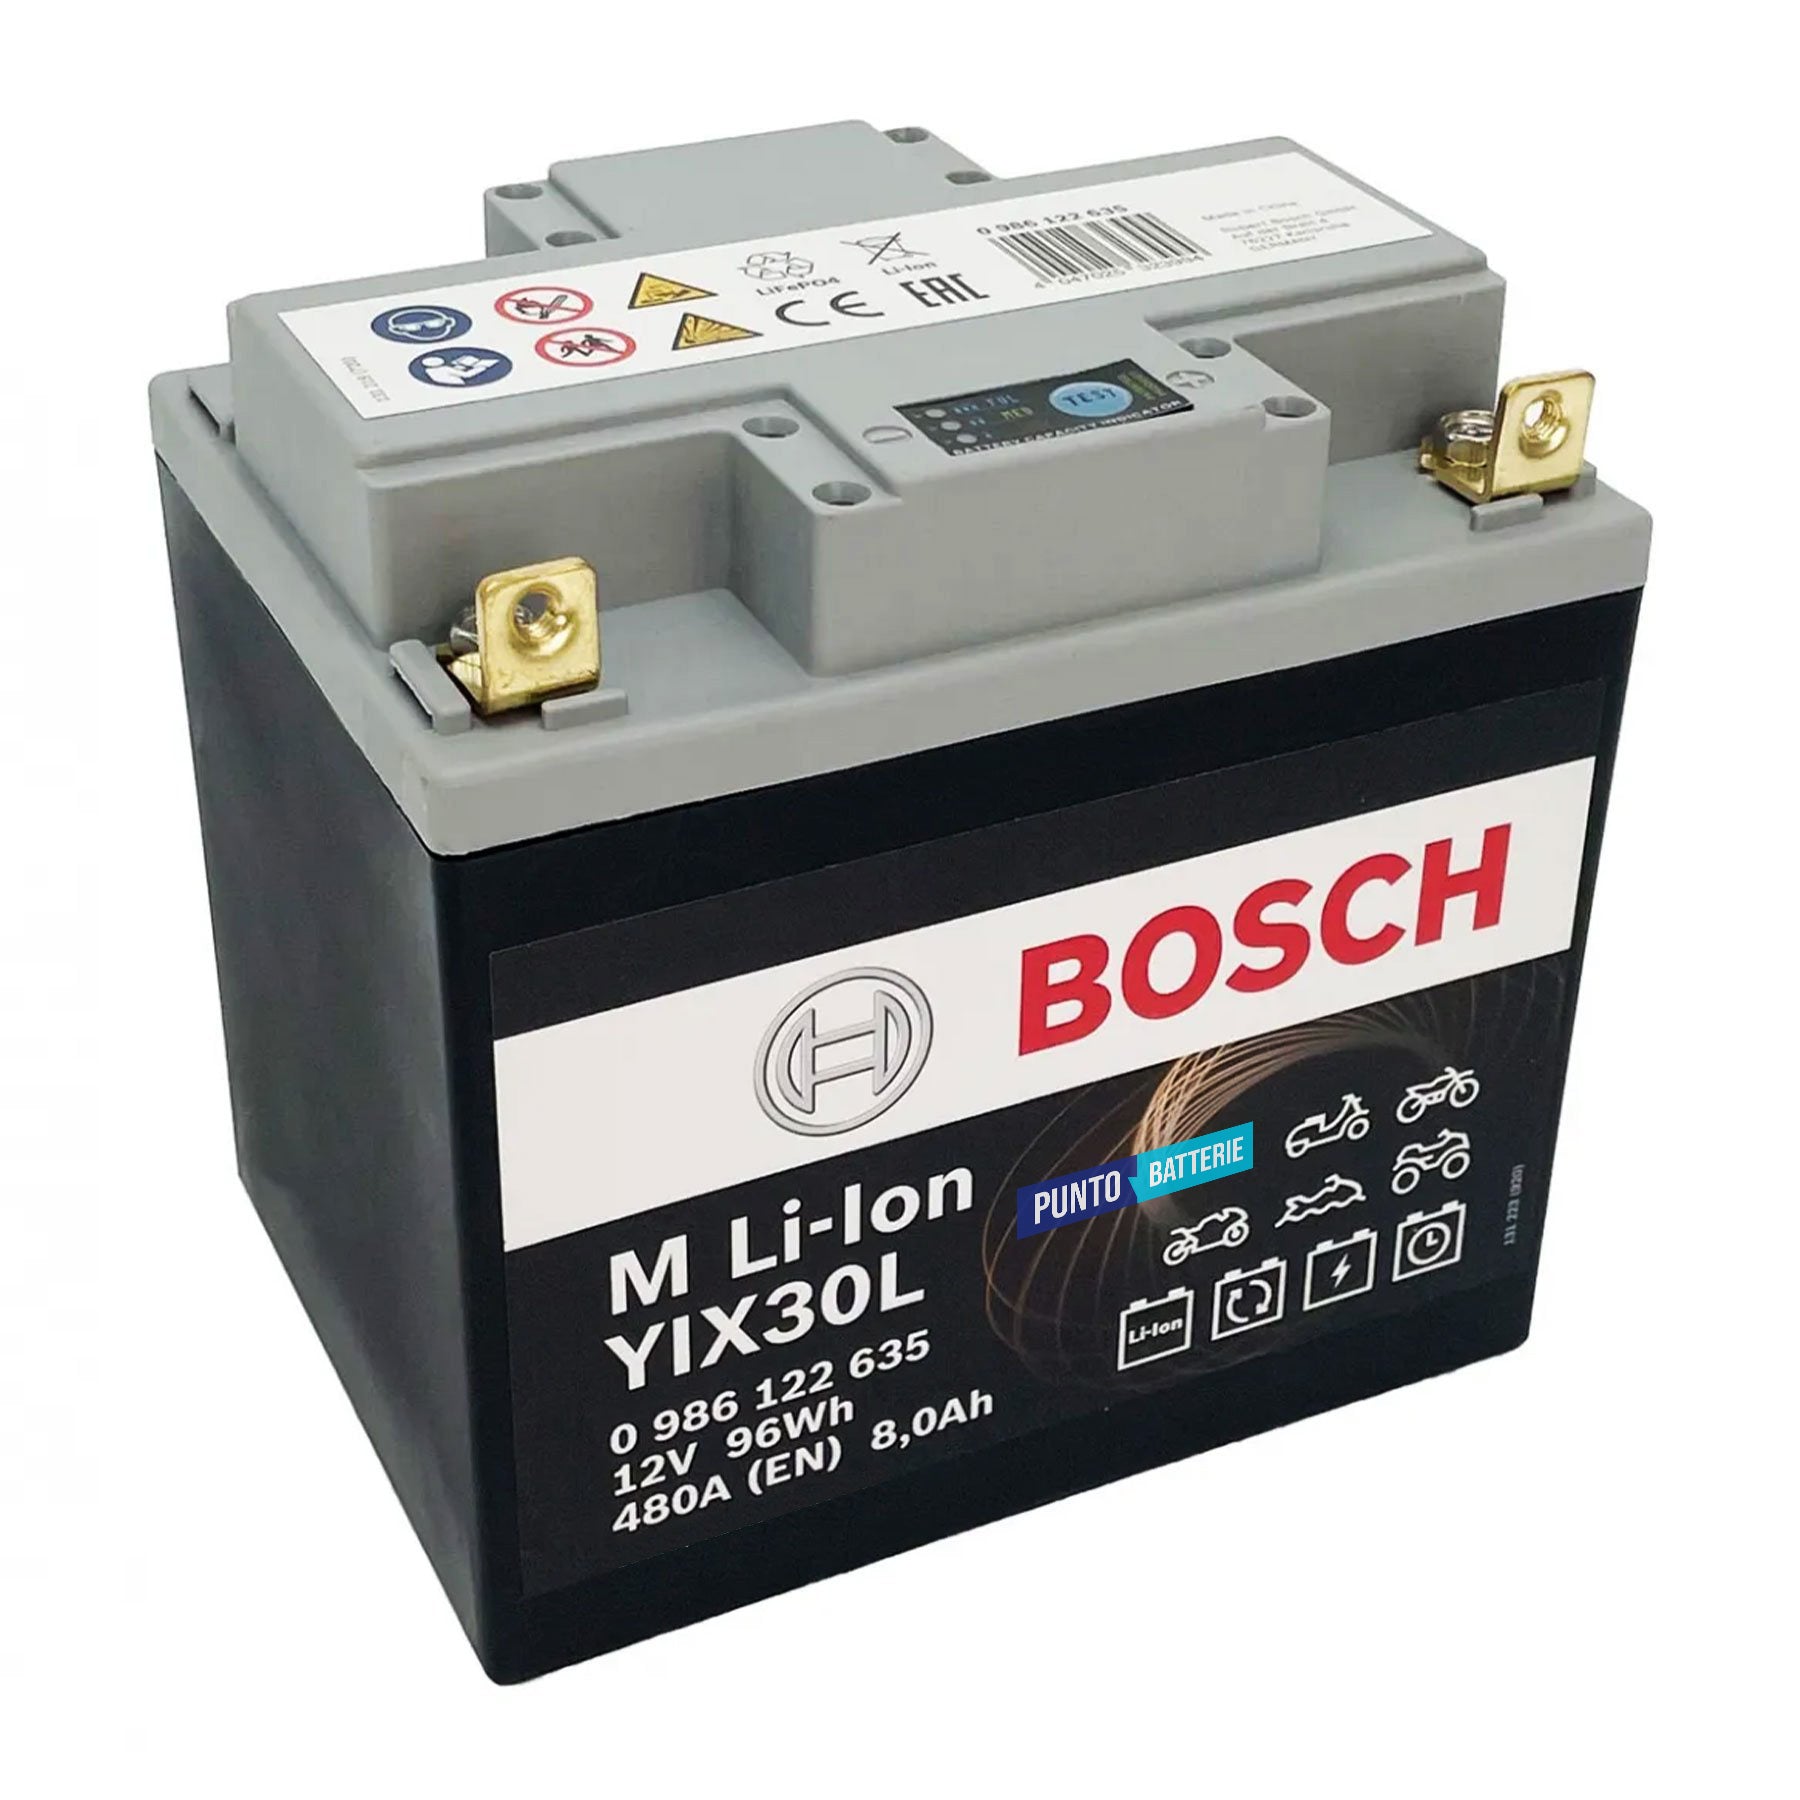 Batteria originale Bosch M Li-ion LIX30L, dimensioni 167 x 124 x 163, polo positivo a destra, 12 volt, 8 amperora, 480 ampere. Batteria per moto, scooter e powersport.